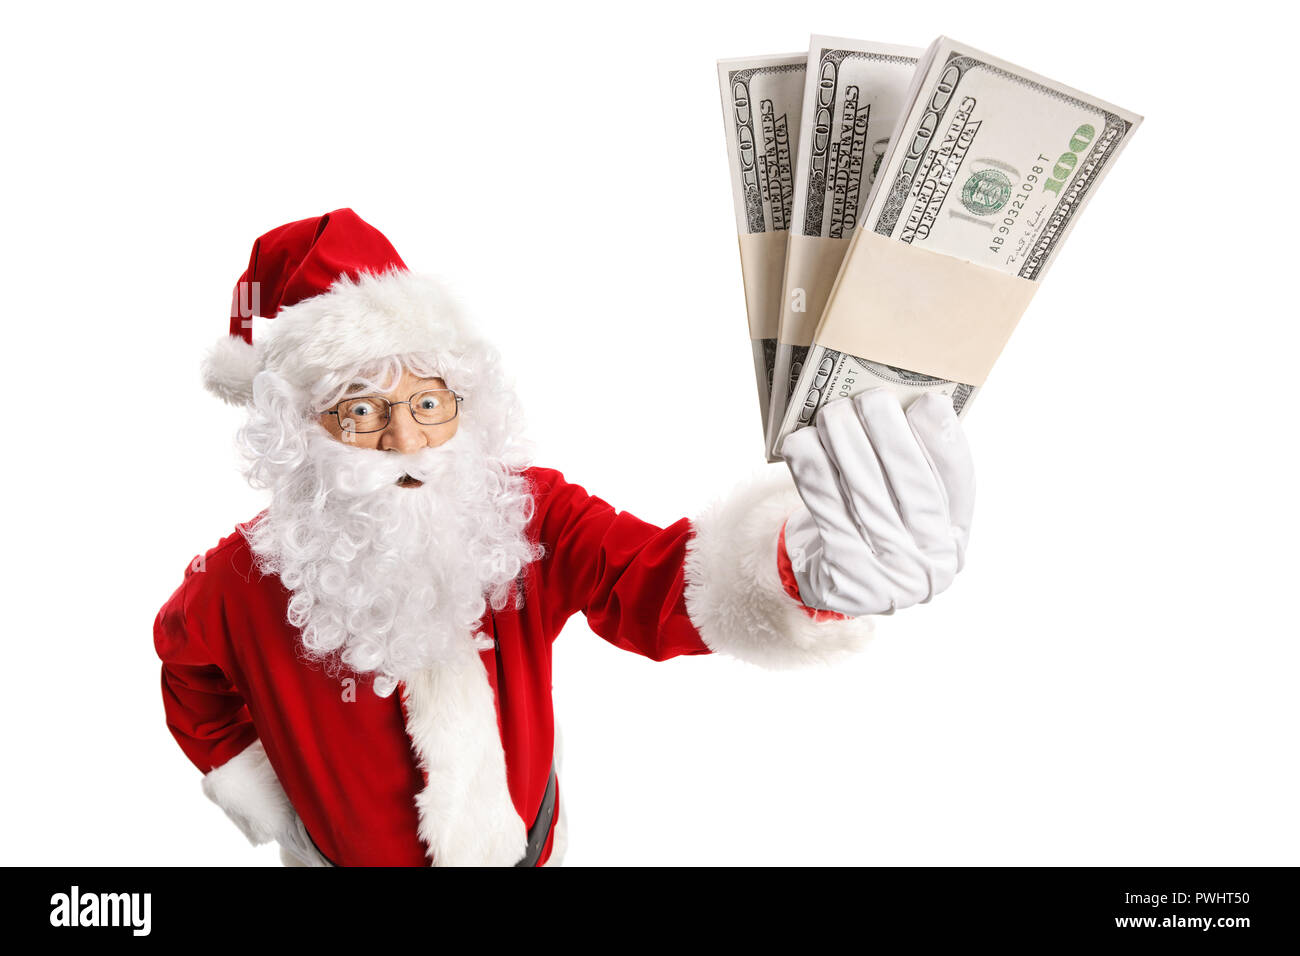 Santa Claus holding money isolated on white background Stock Photo